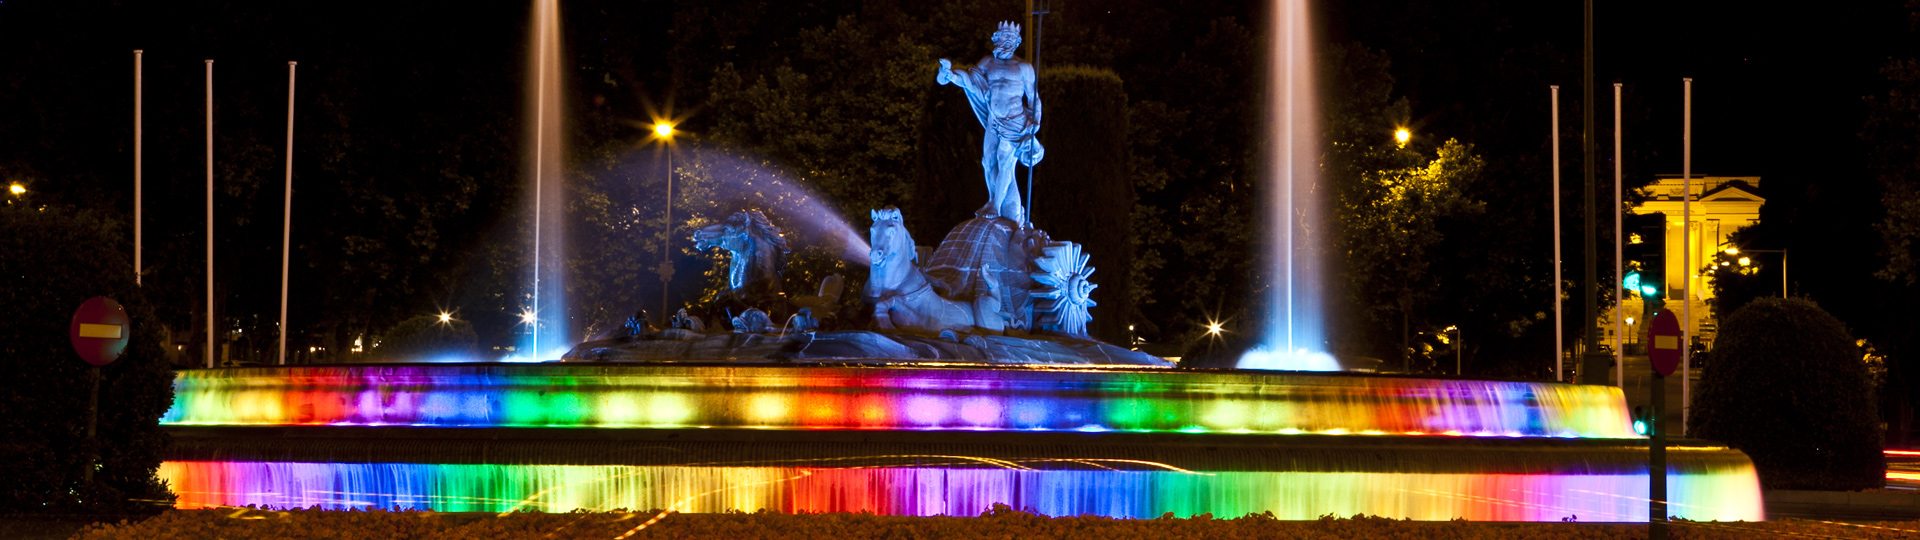 Fuente de Neptuno de Madrid decorada con motivo de la celebración del World Pride 